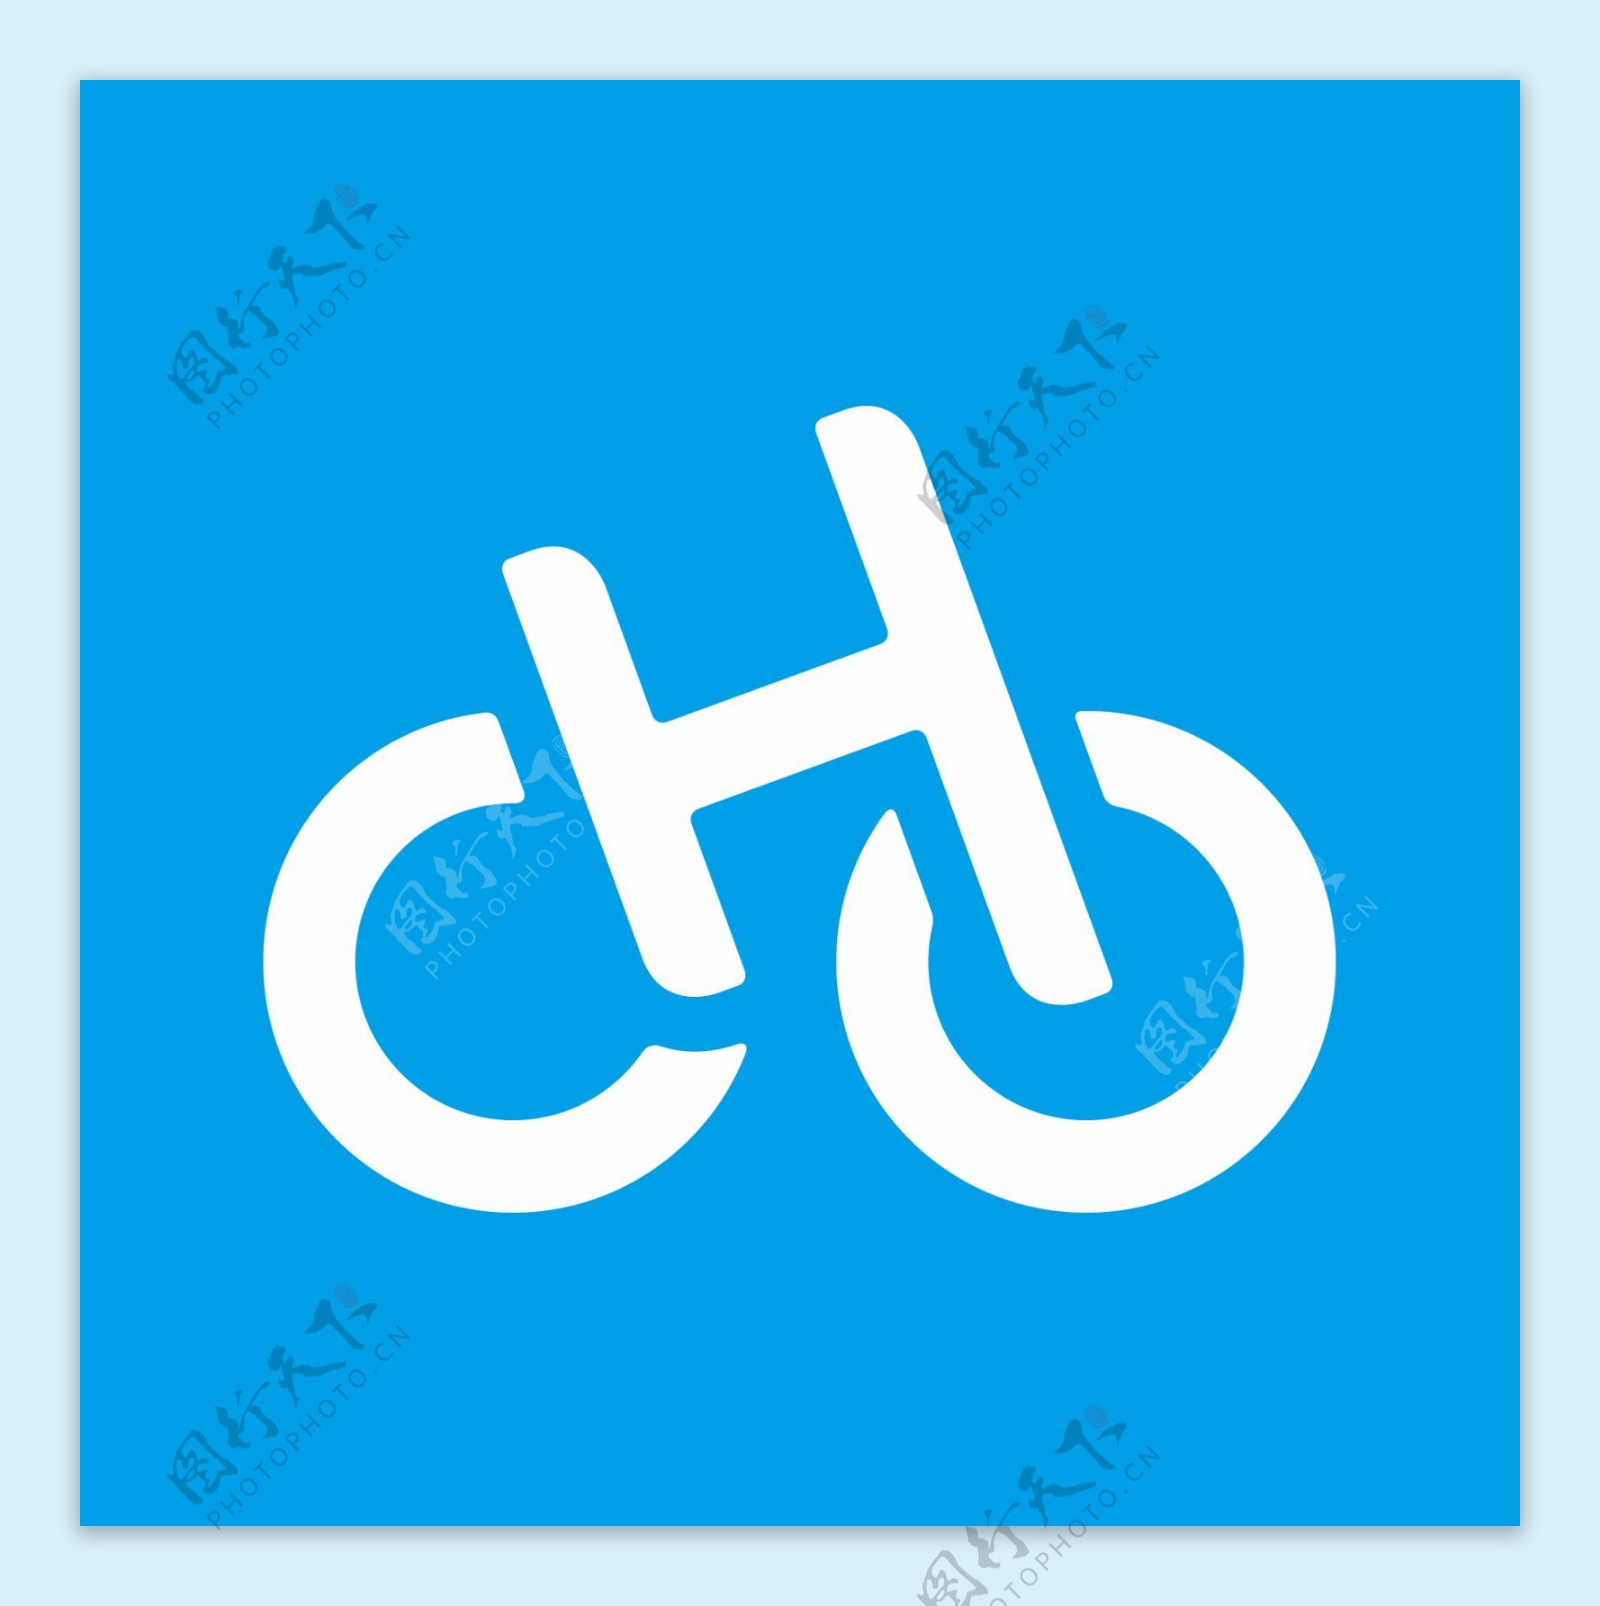 哈罗单车logo